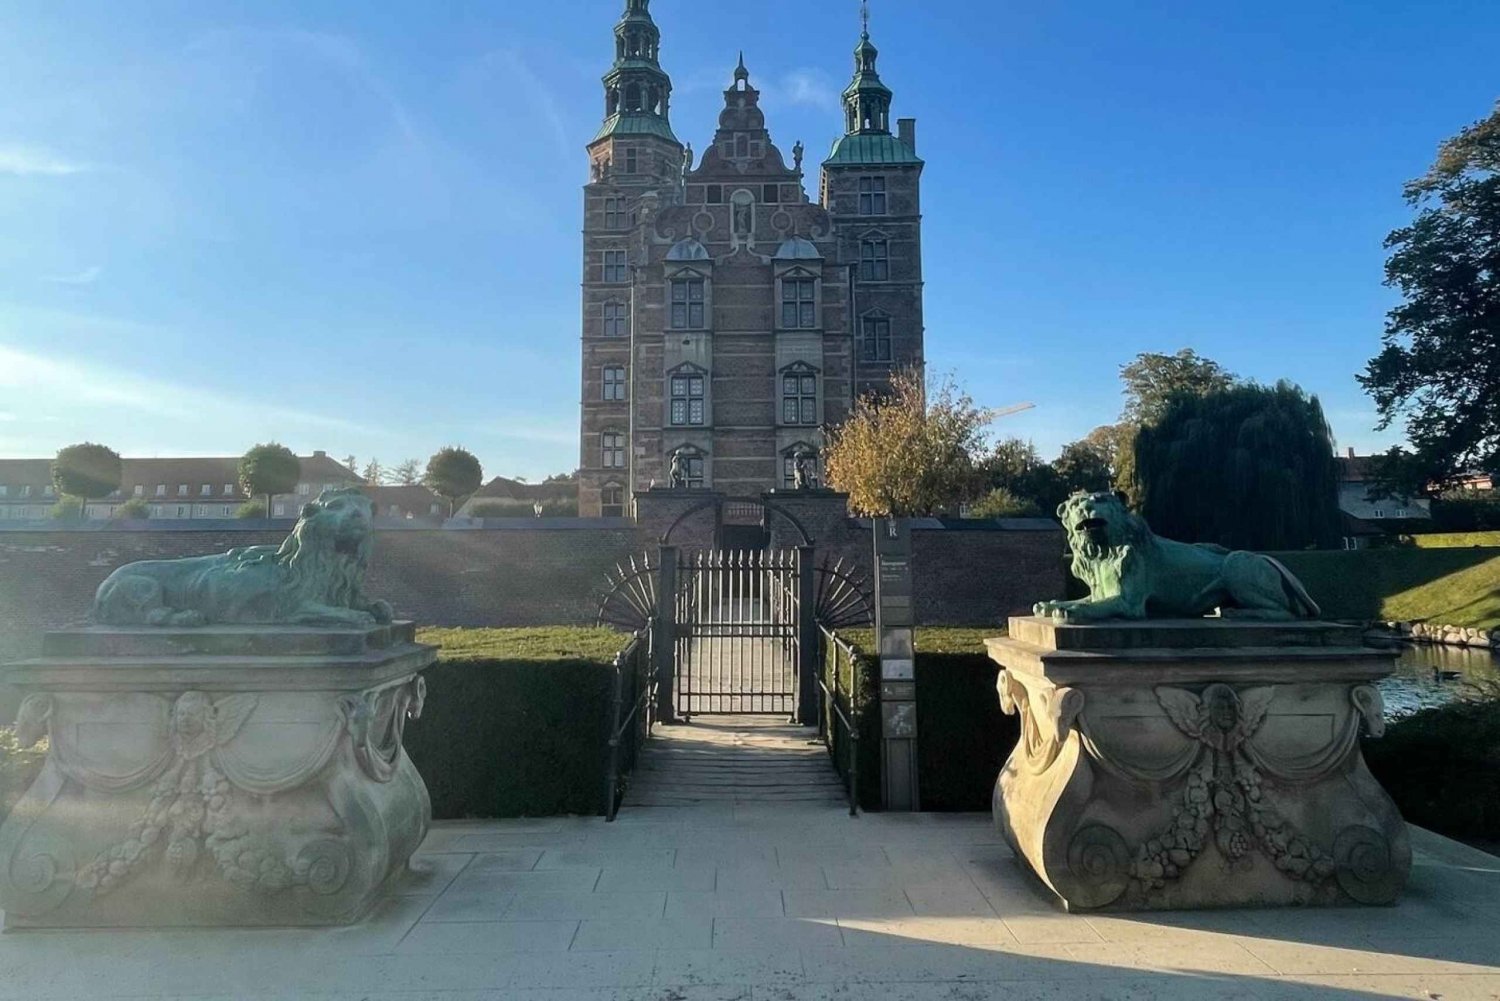 Kopenhaga: King's Garden Outdoor Escape Room Game